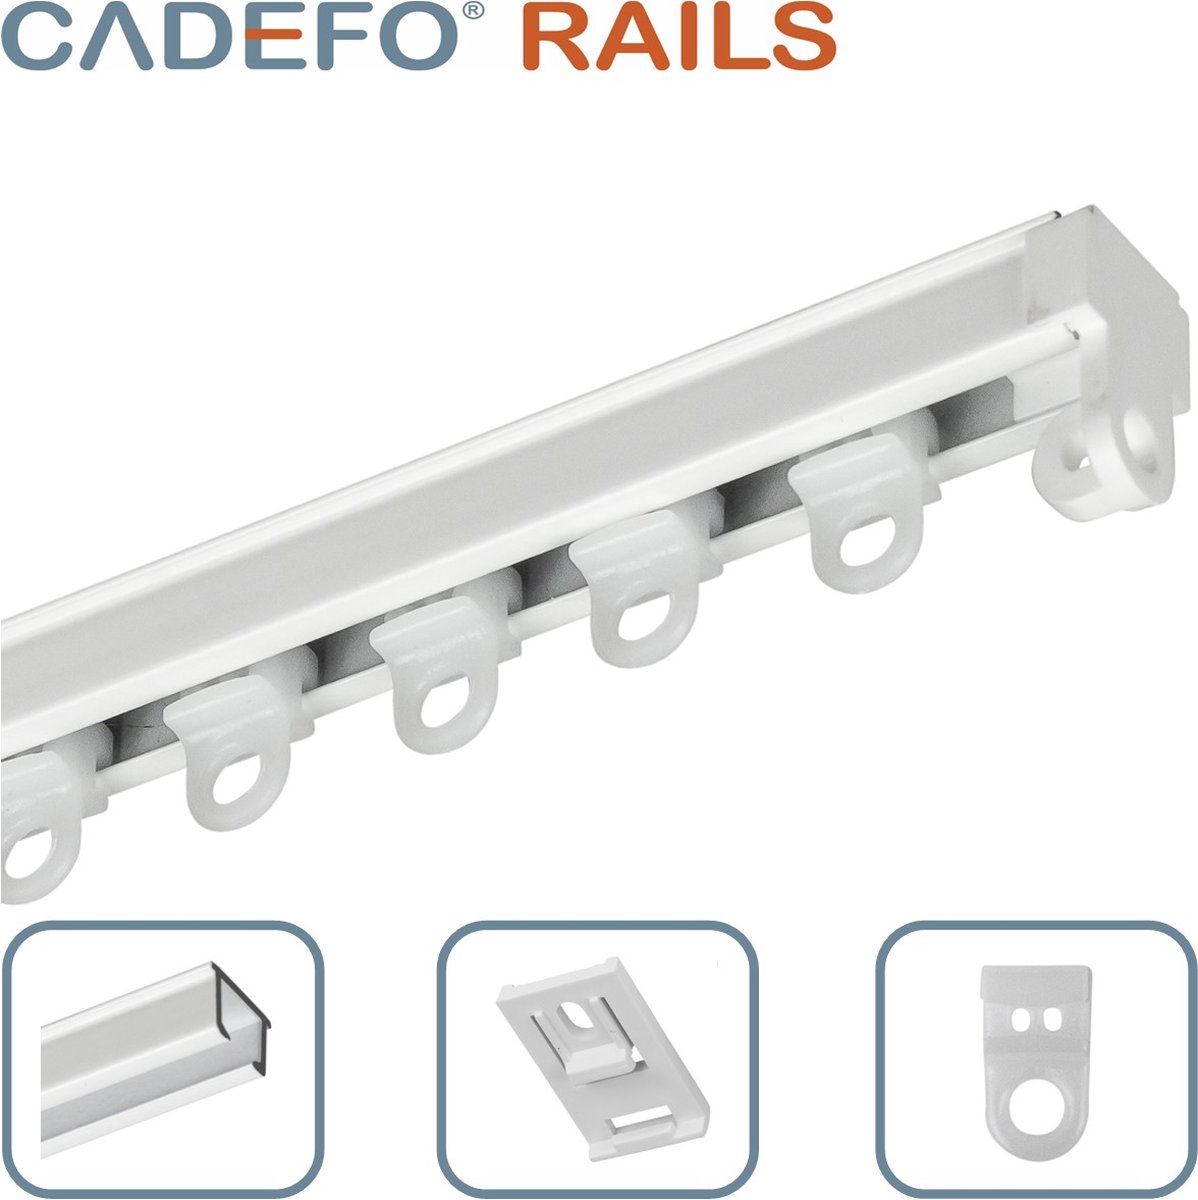 CADEFO RAILS (451 - 500 cm) Gordijnrails - Compleet op maat! - UIT 1 STUK - Leverbaar tot 6 meter - Plafondbevestiging - Lengte 456 cm